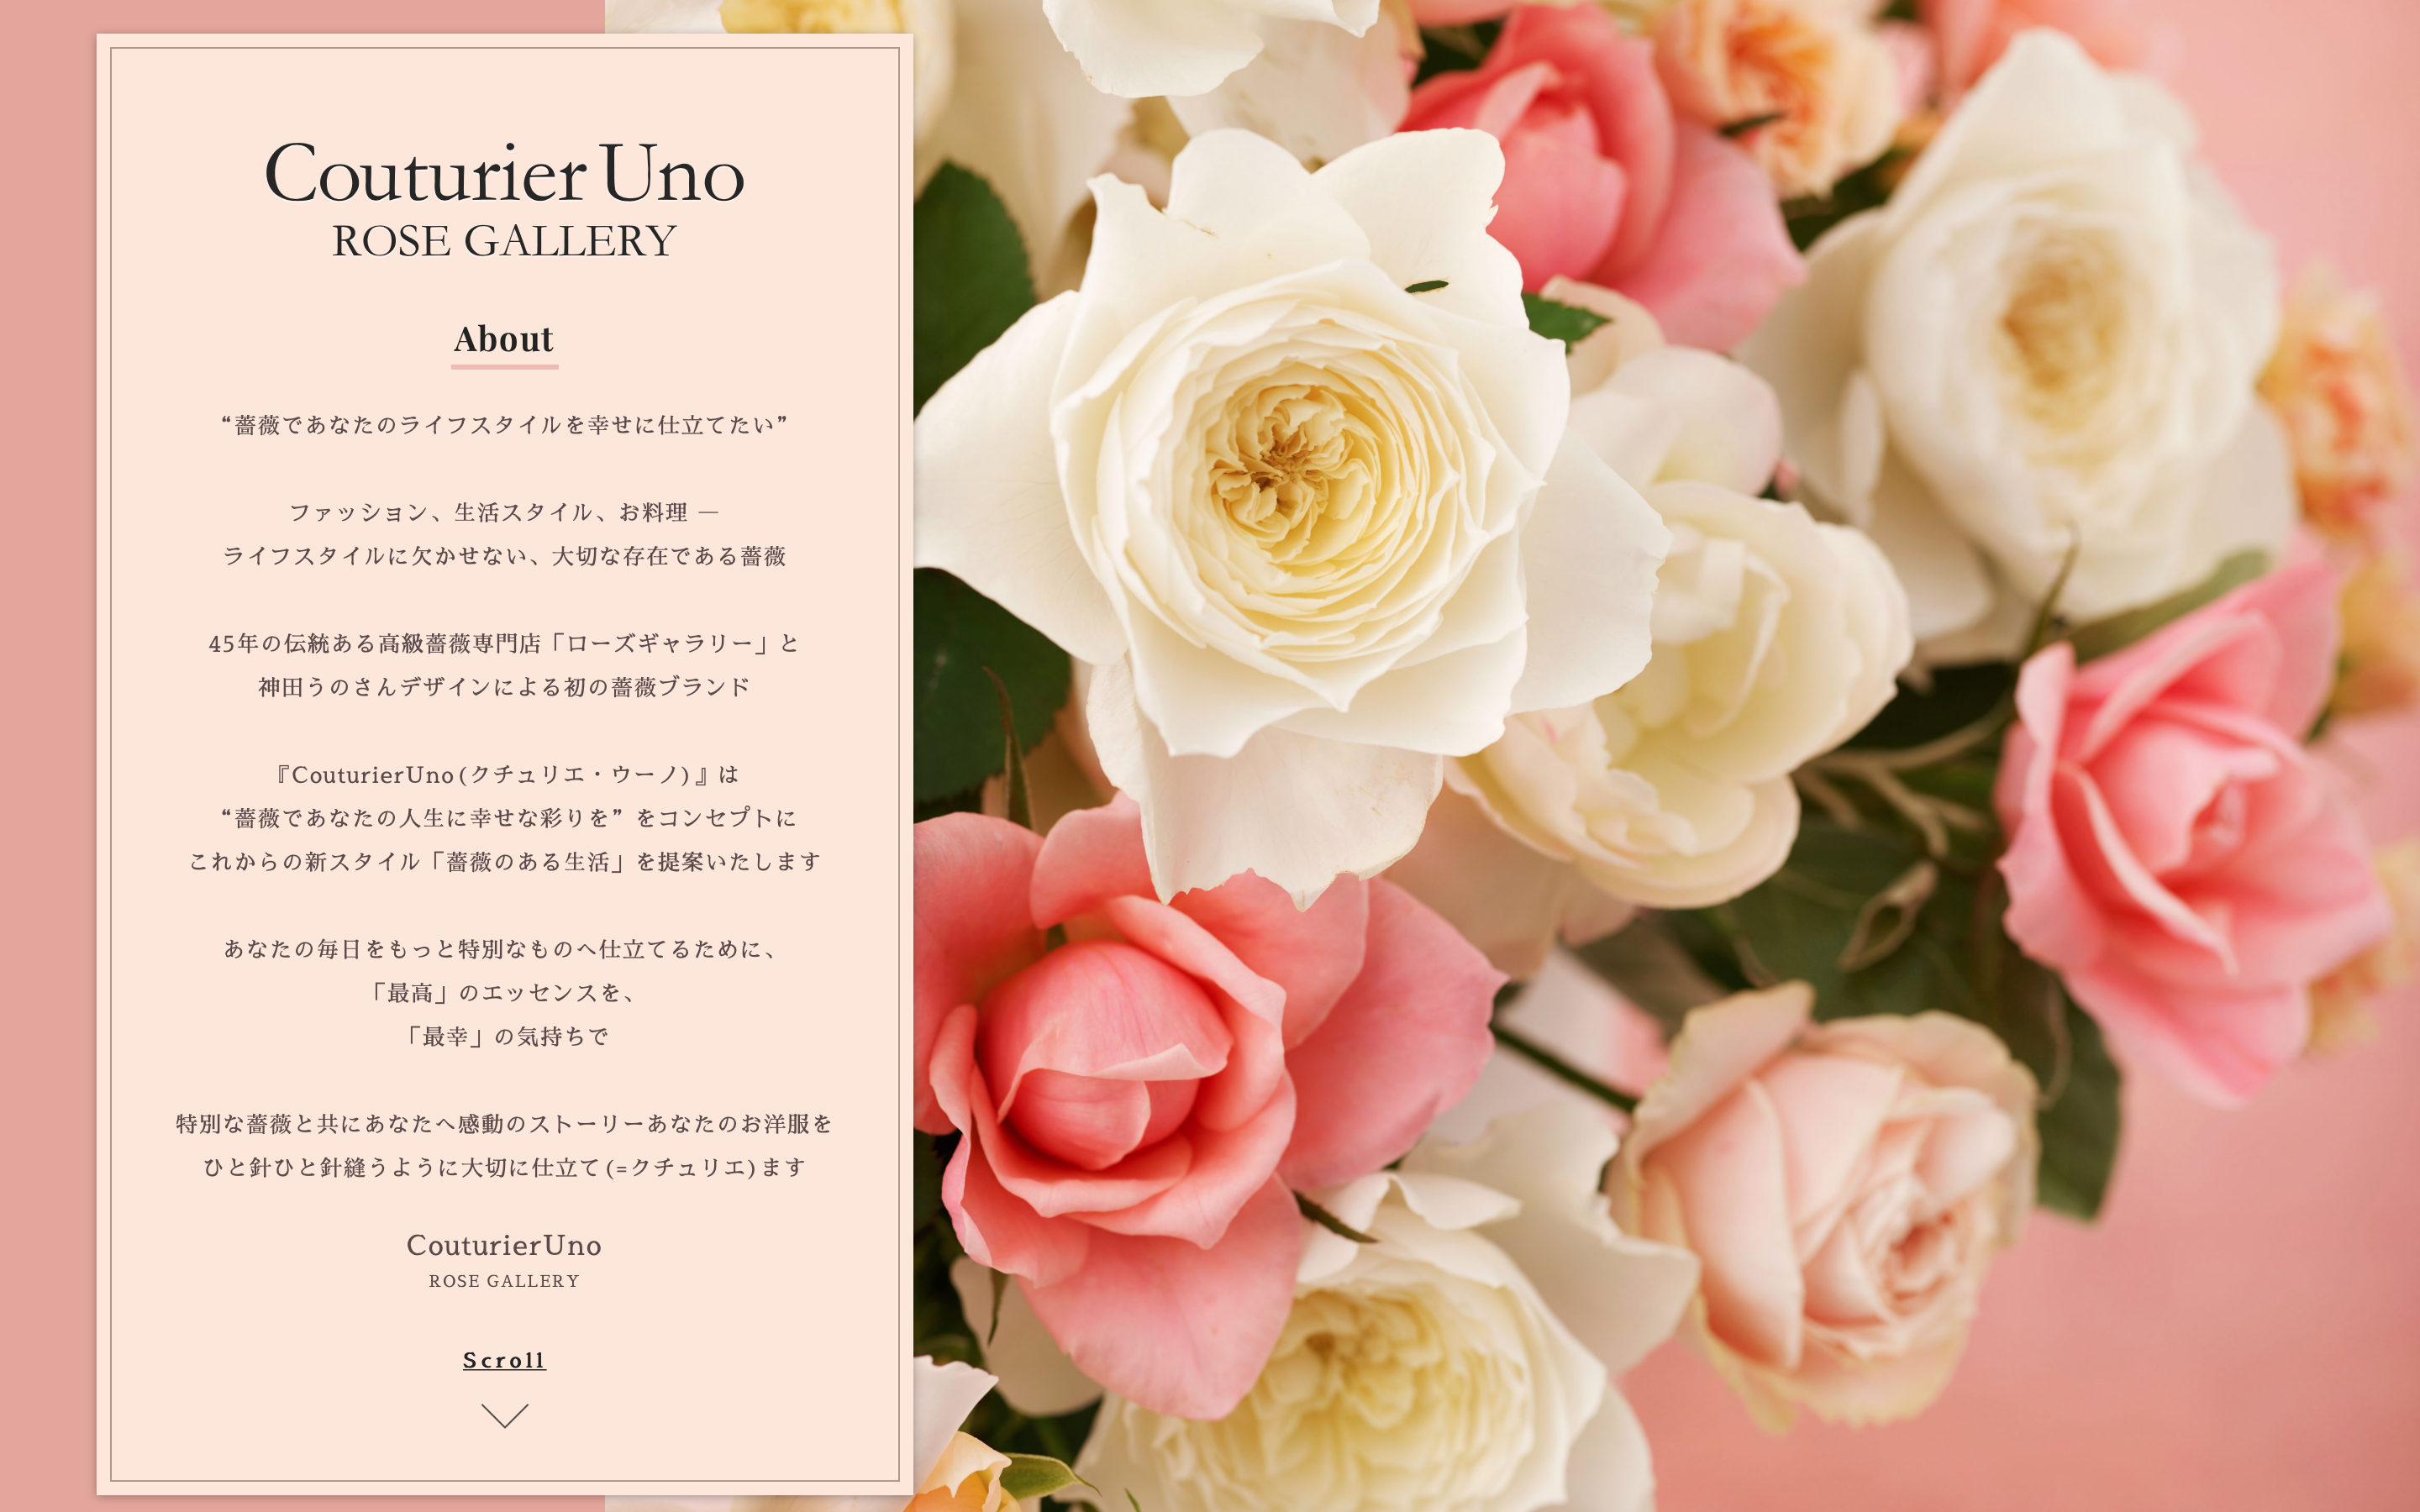 神田うのさんプロデュース 初の薔薇ブランド Couturieruno クチュリエウーノ を今秋オンラインで販売開始 ジャパンフラワーグループ株式会社のプレスリリース